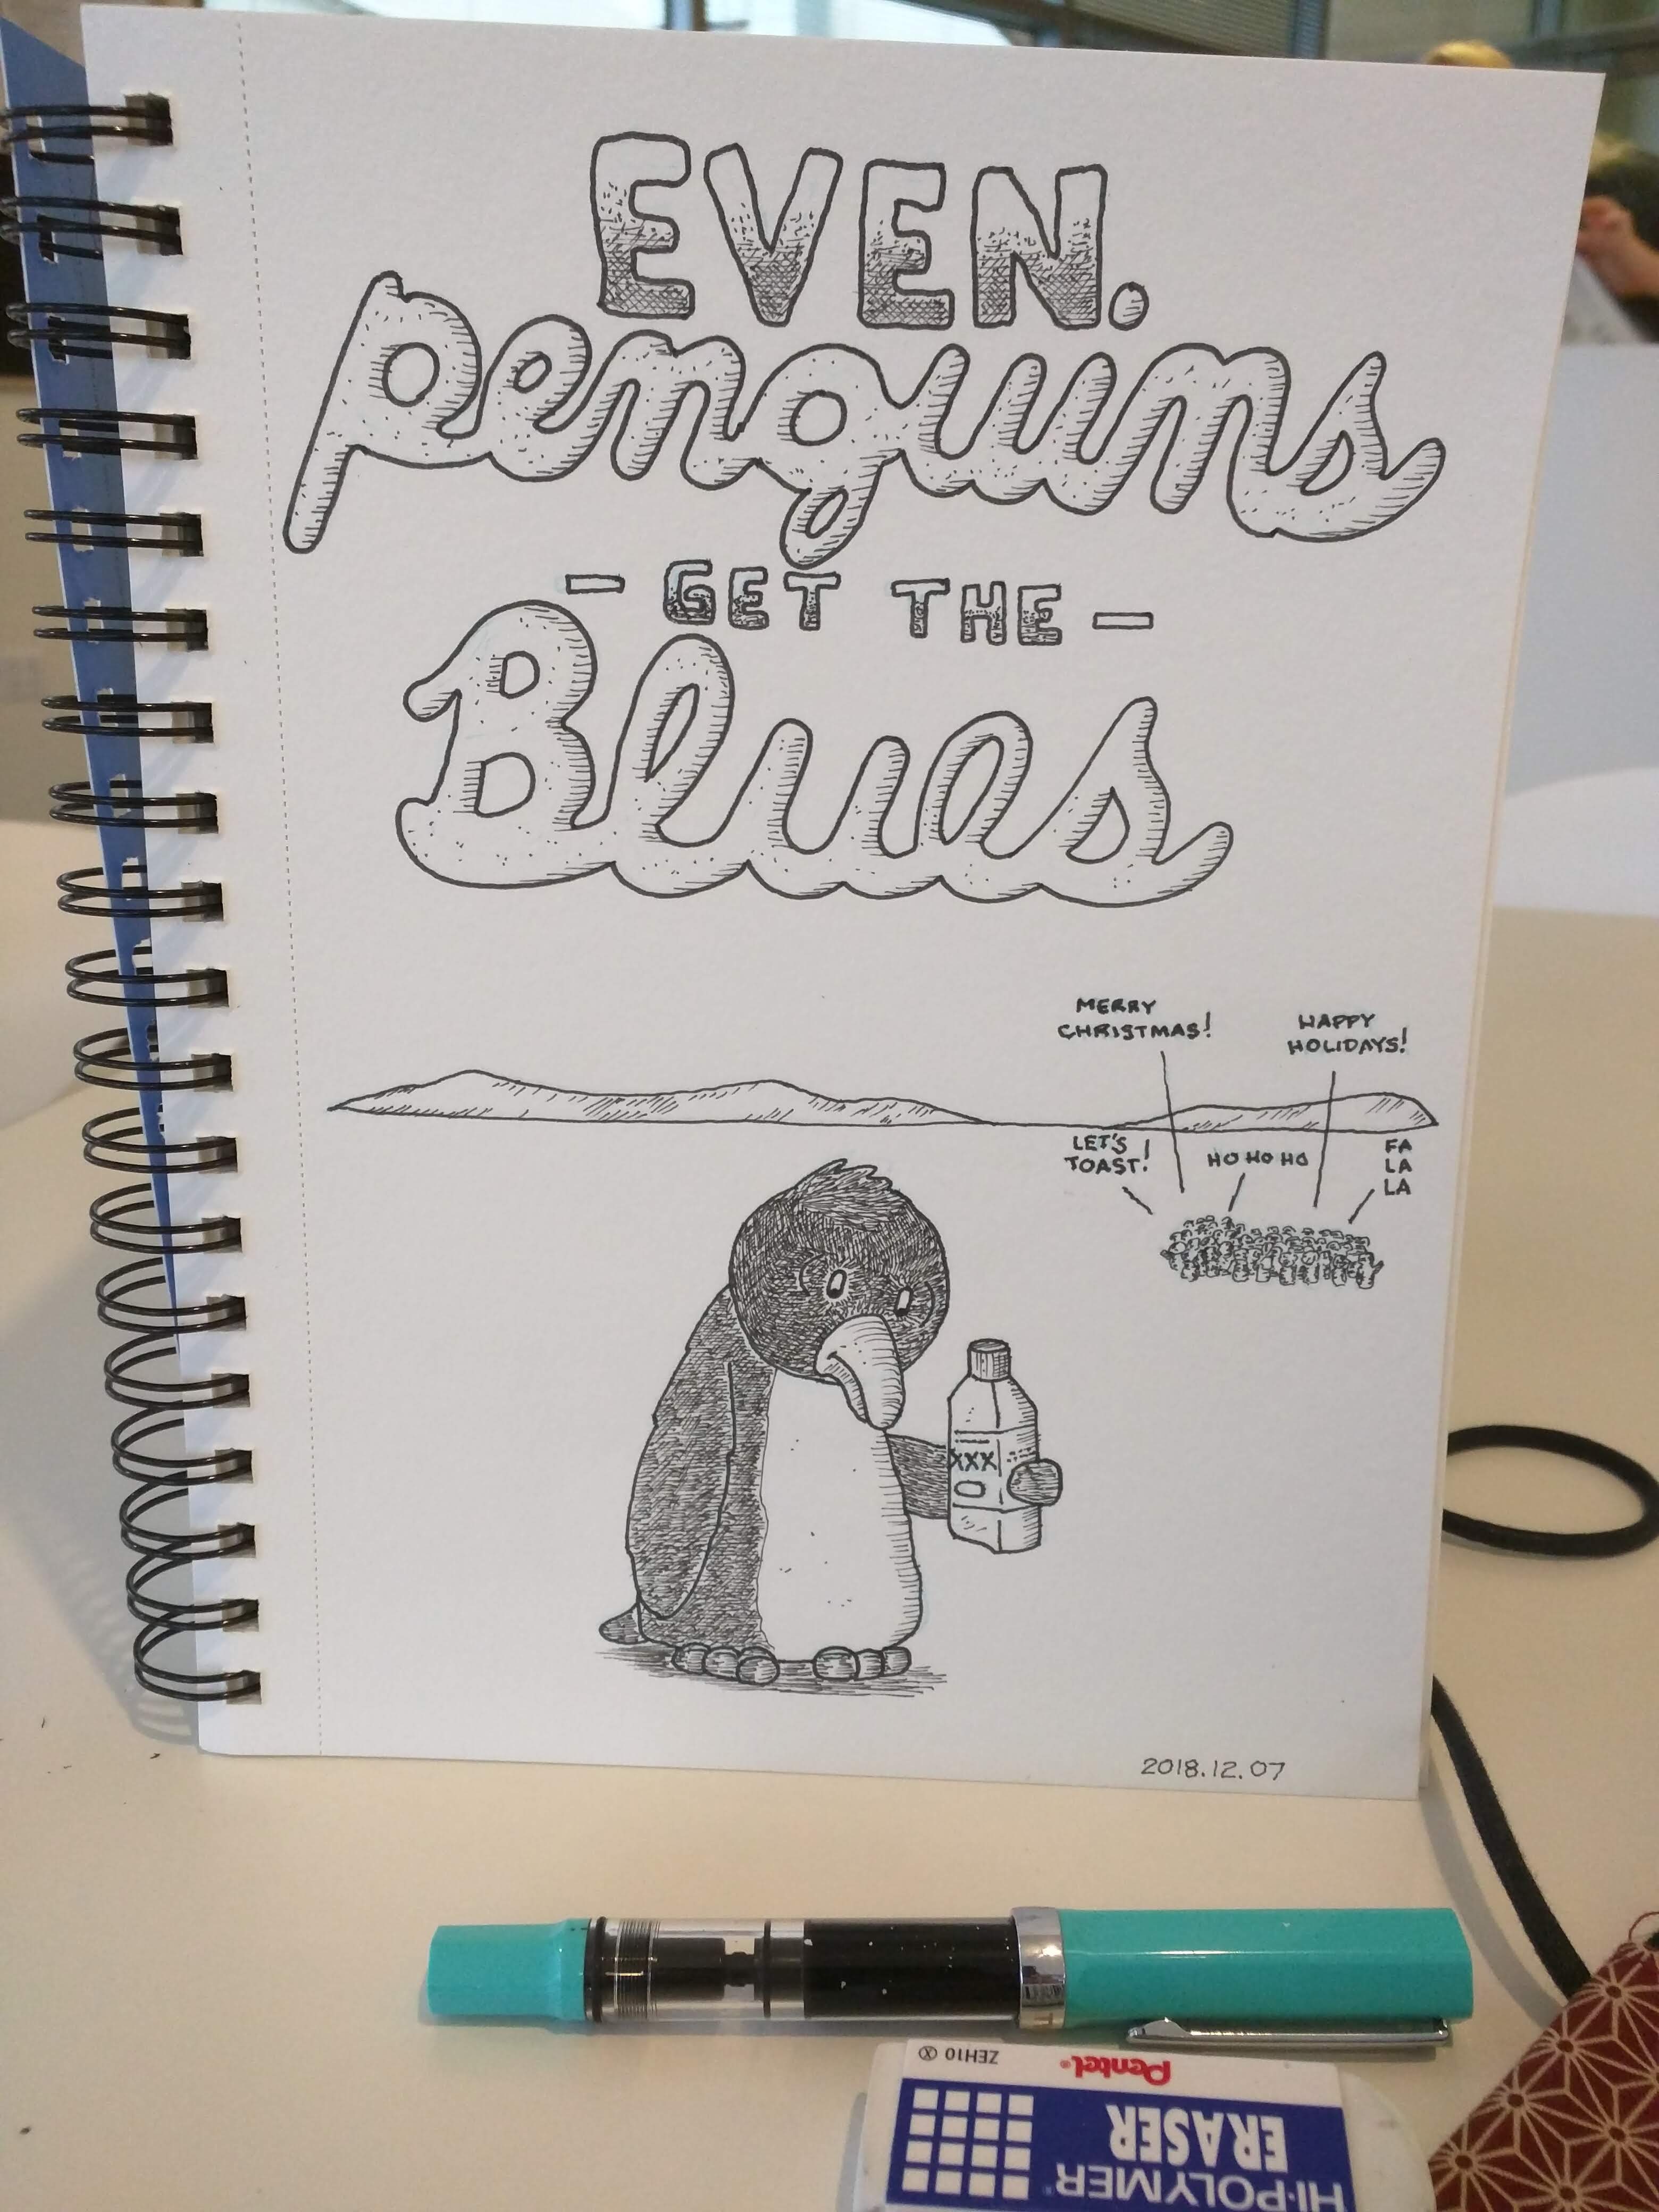 Even Penguins get the blues.